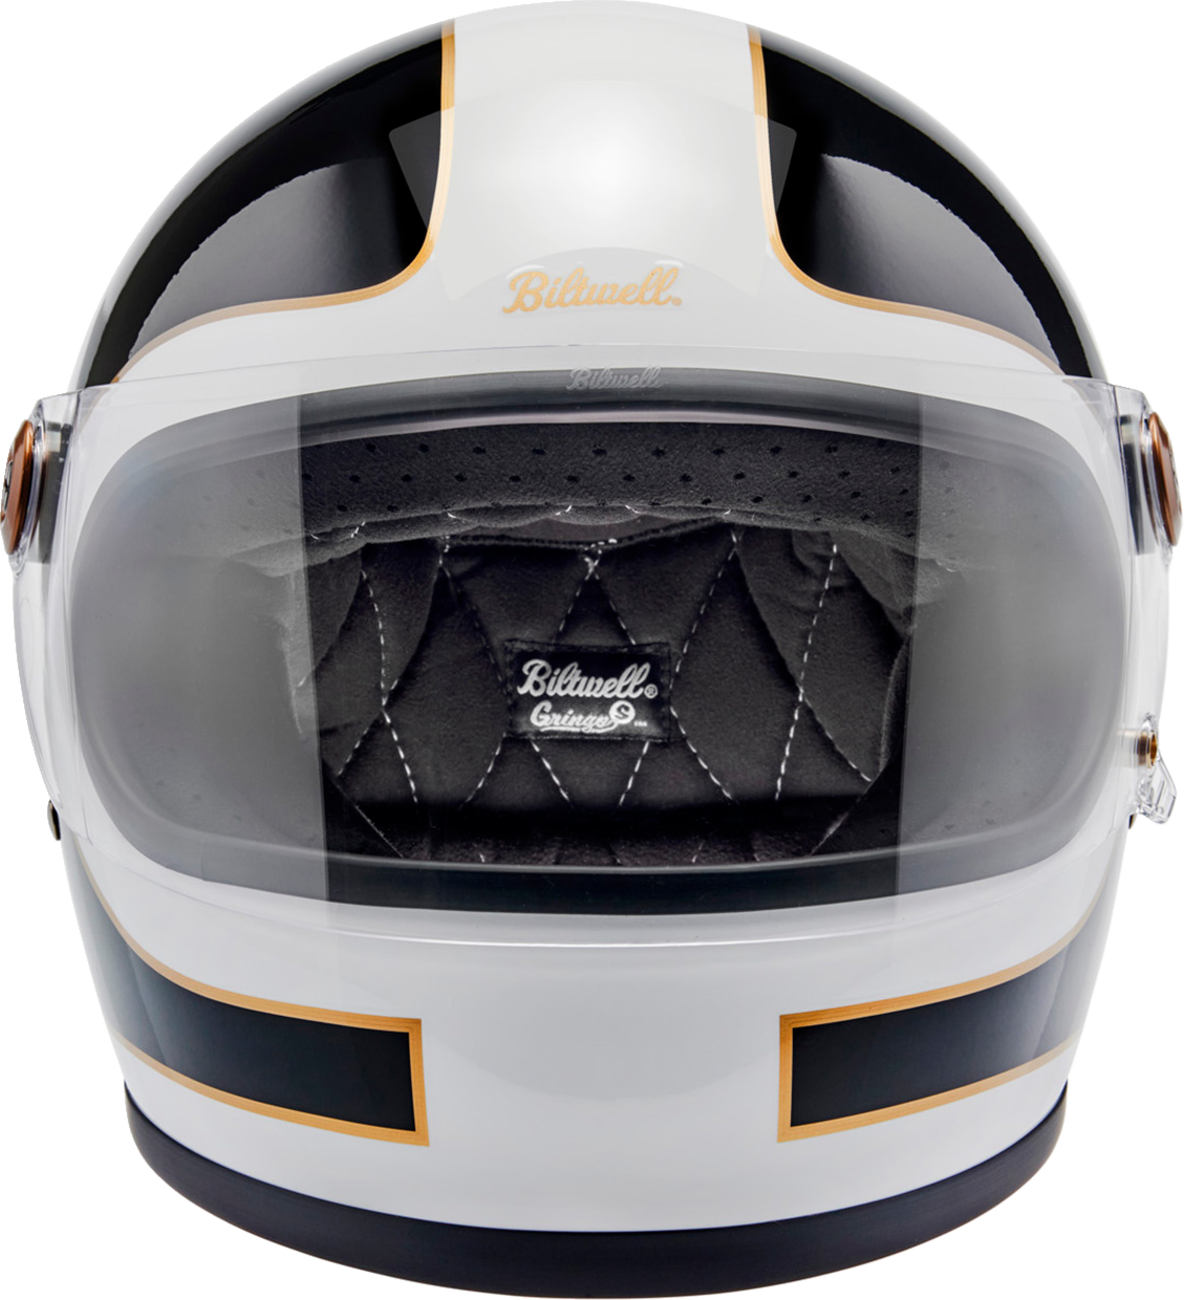 BILTWELL Gringo S Helmet - Gloss White/Black Tracker